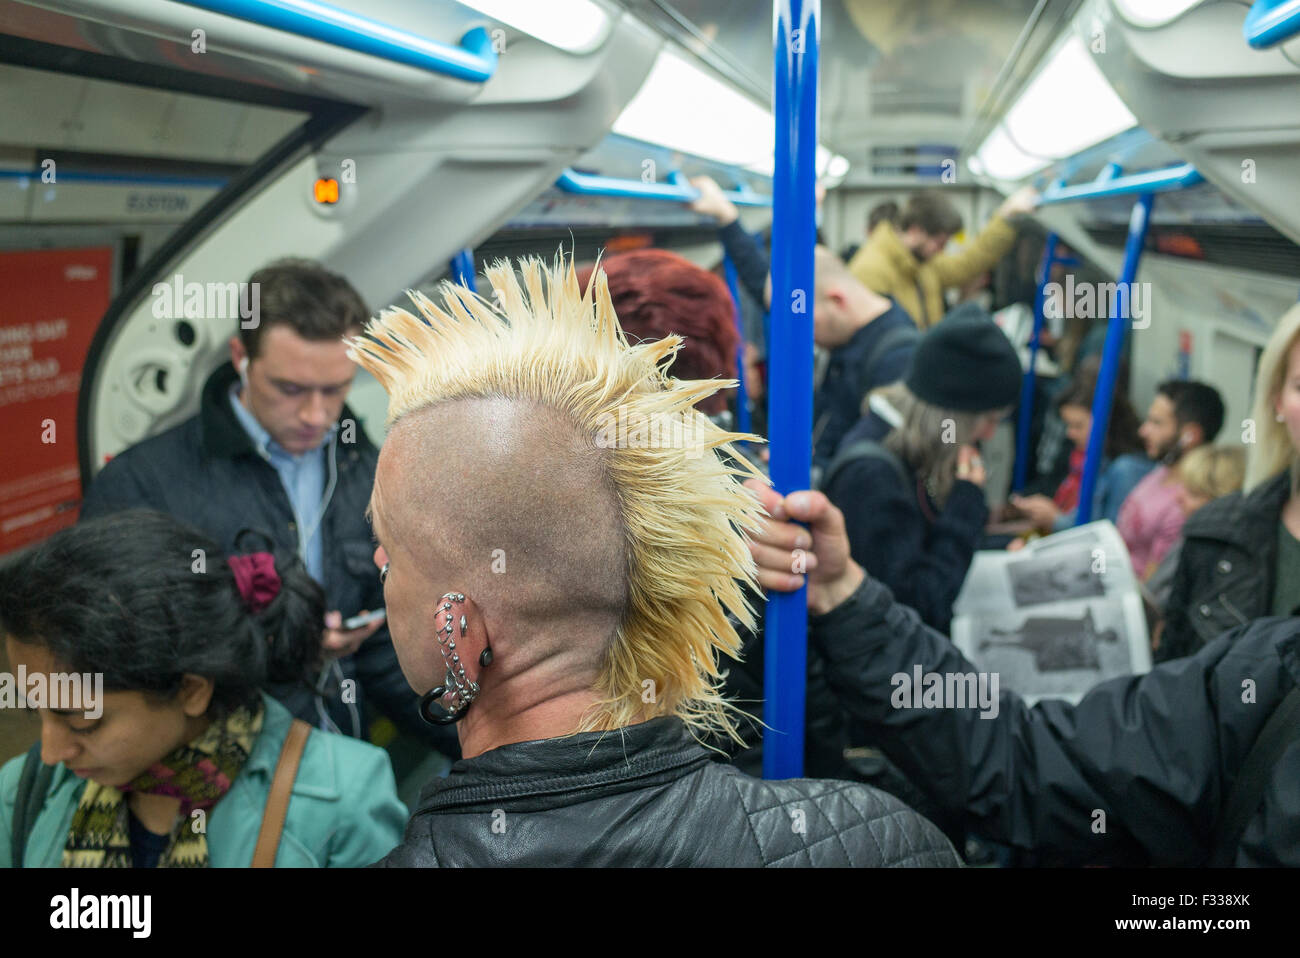 Ein Mann mit einem Irokesenschnitt Haarschnitt auf eine u-Bahn unterirdisch in London Großbritannien Stockfoto